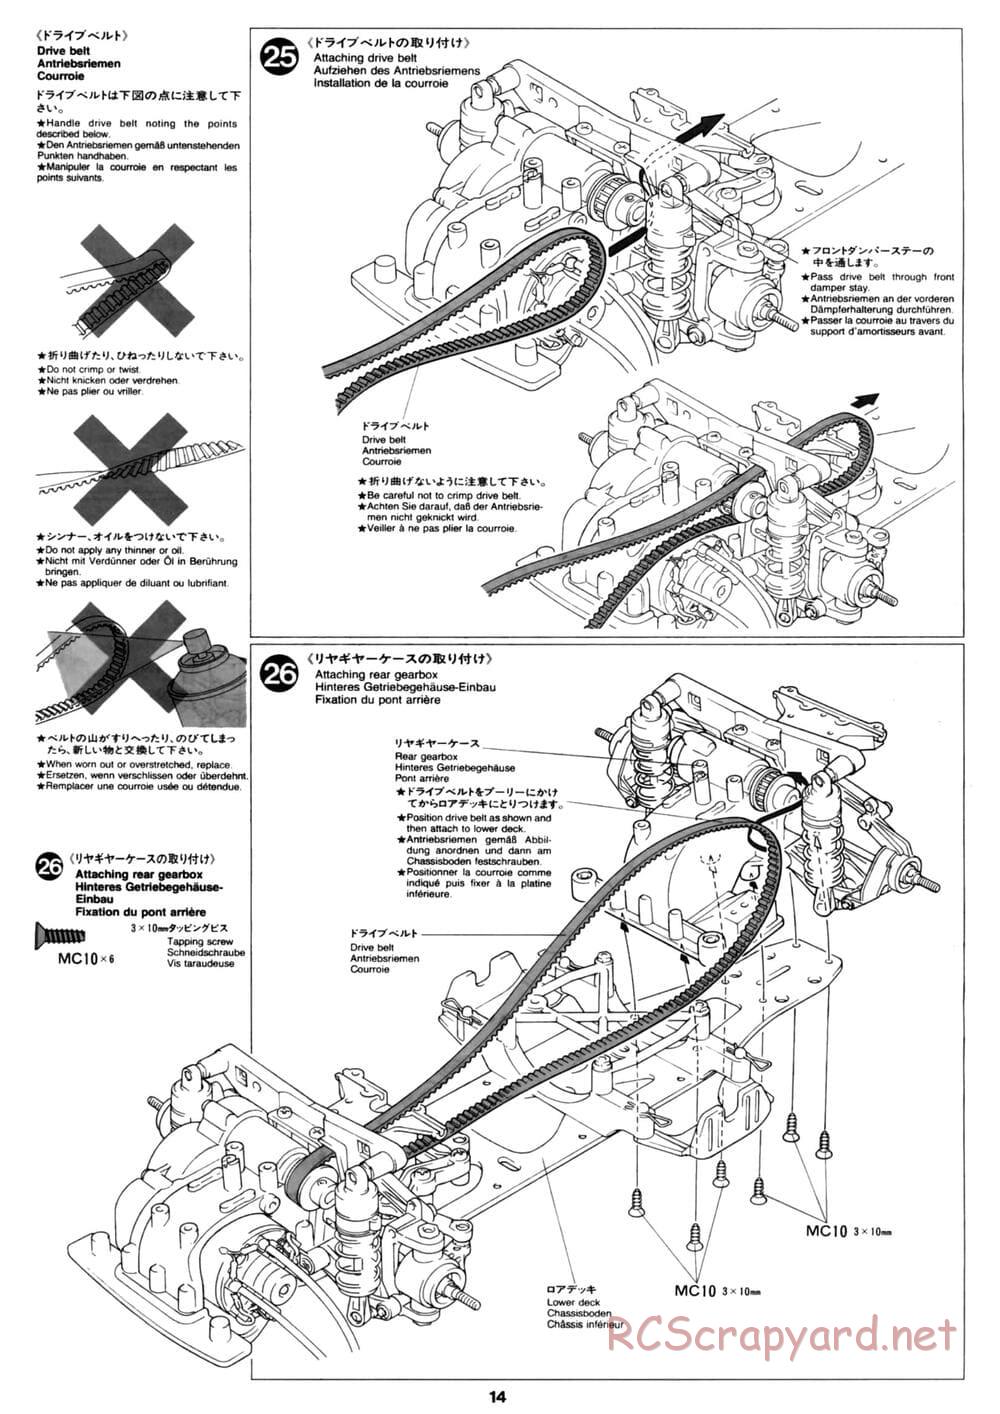 Tamiya - David Jun TA03F Pro Chassis - Manual - Page 14